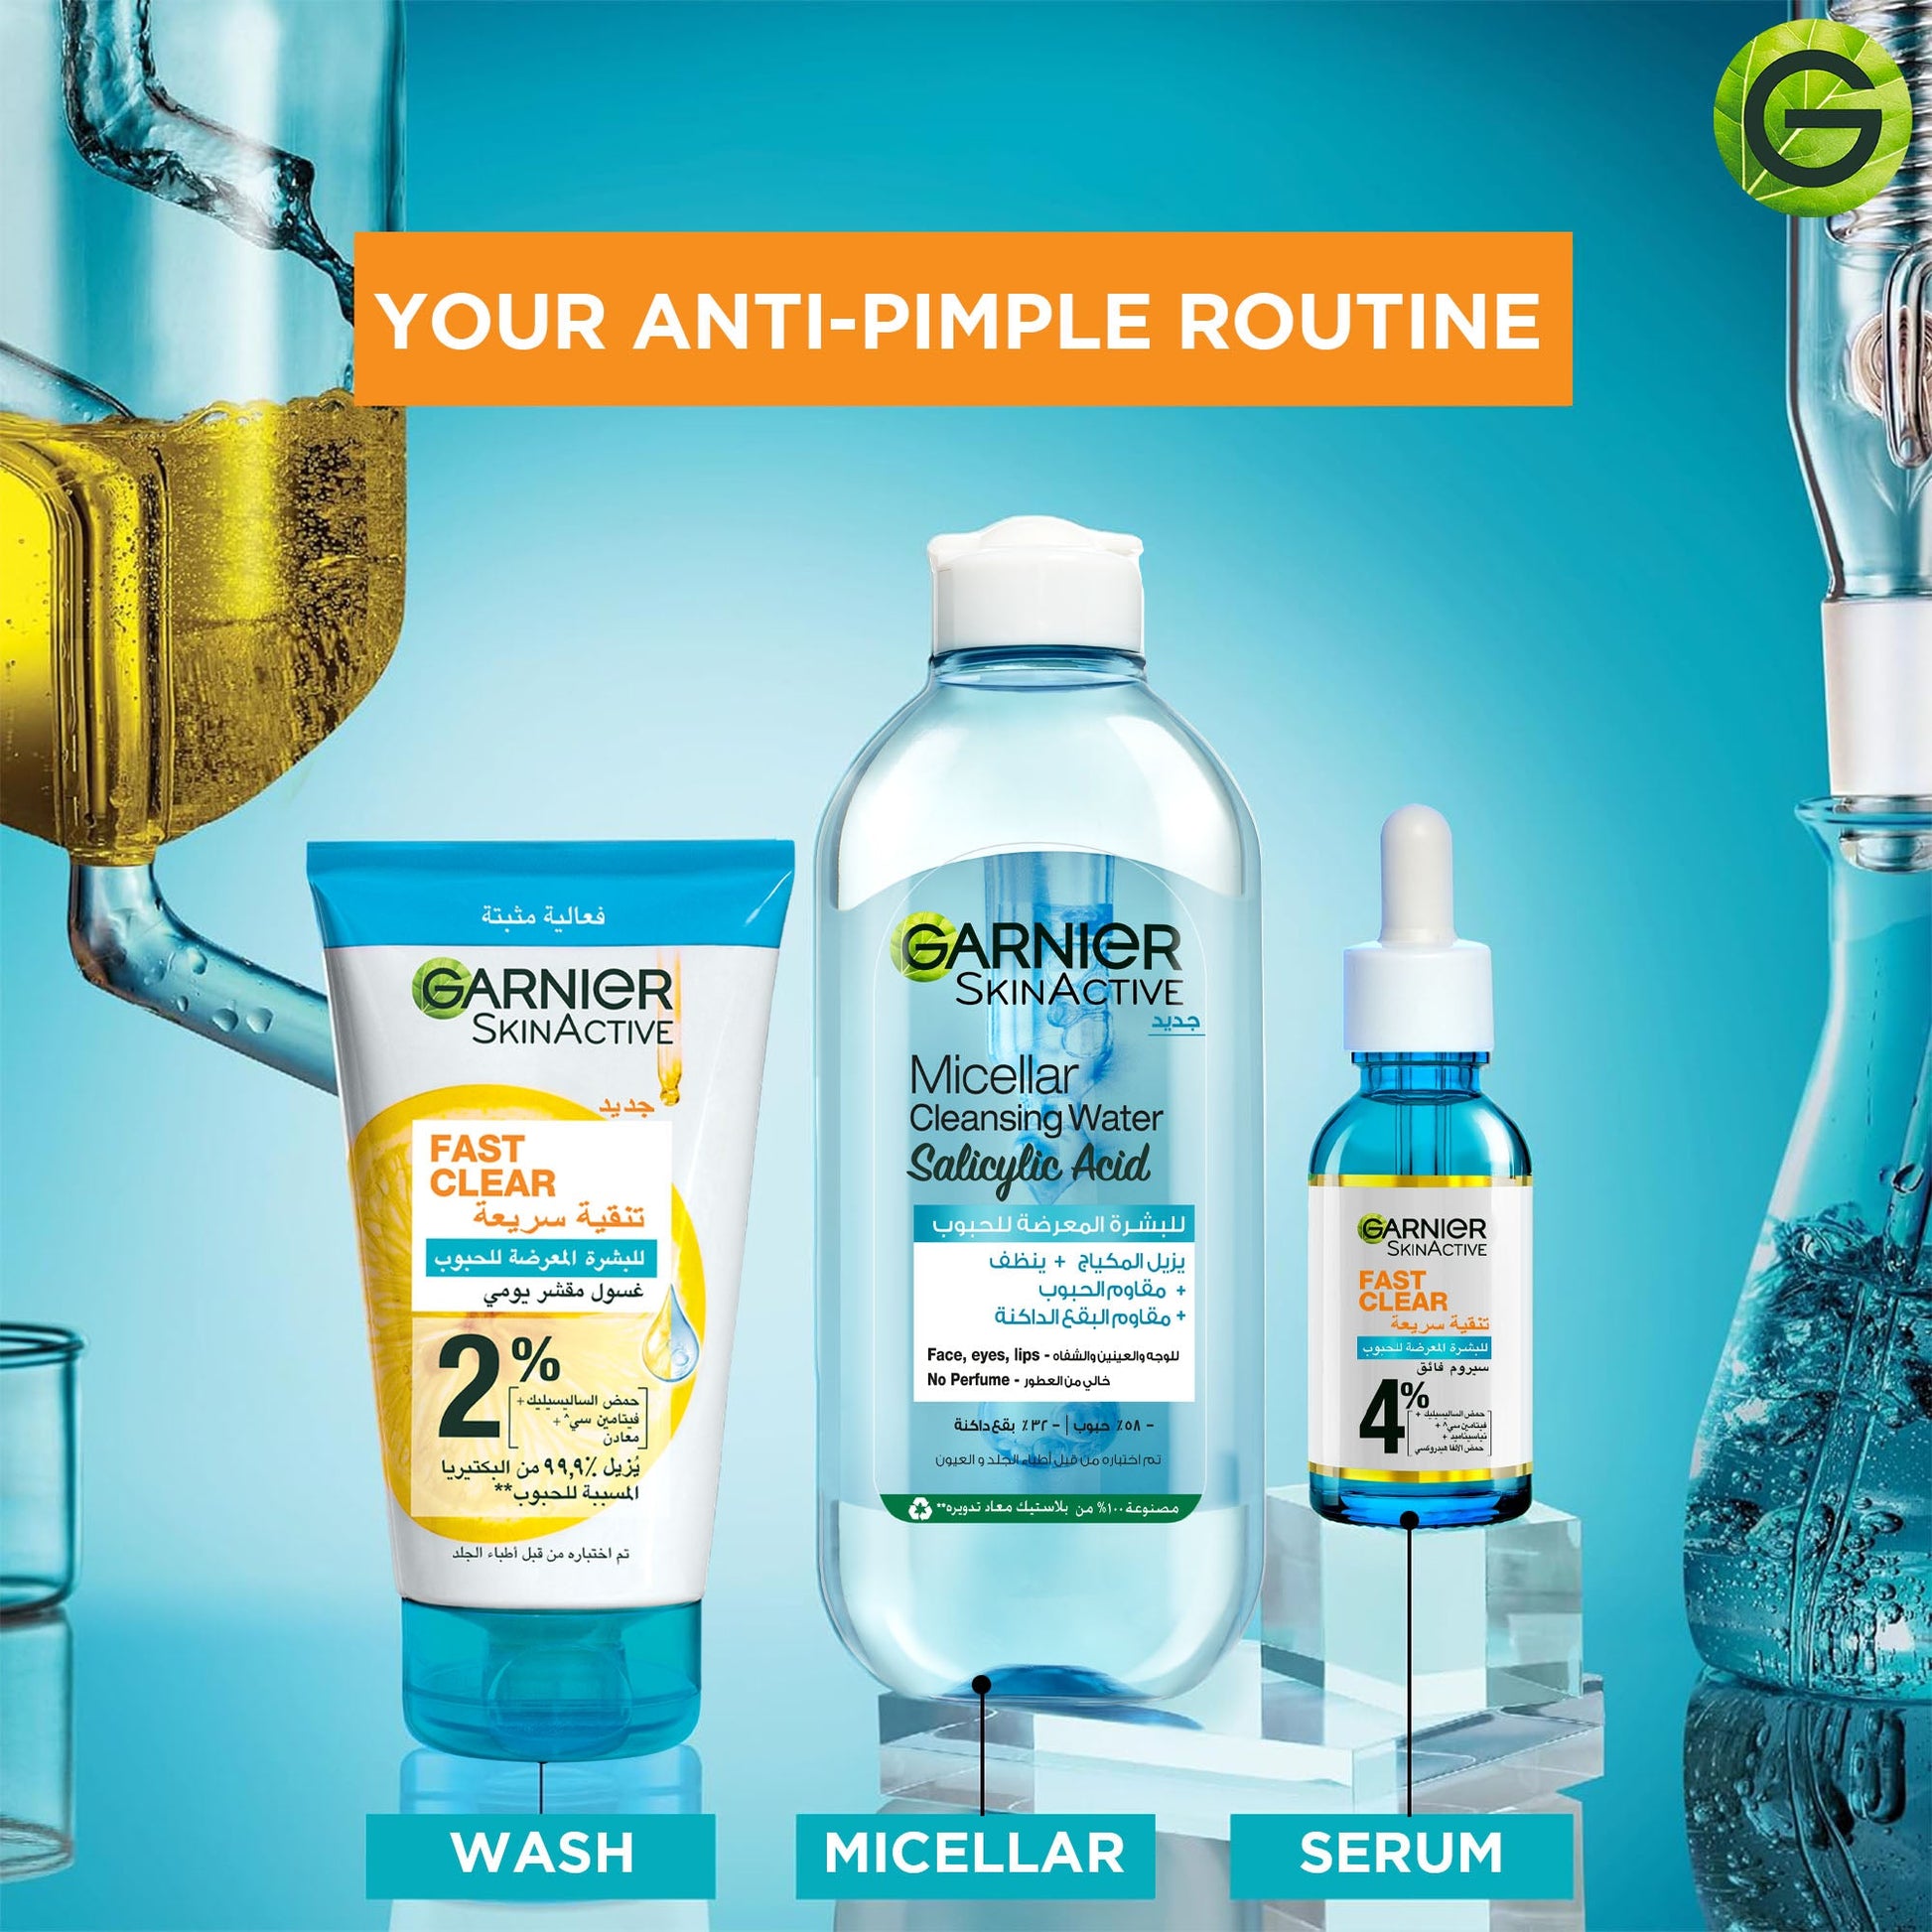 Garnier Fast Clear [2%] Salicylic Acid & Vitamin C - 3-in-1 Anti-Acne Exfoliating Wash 150ml - Medaid - Lebanon